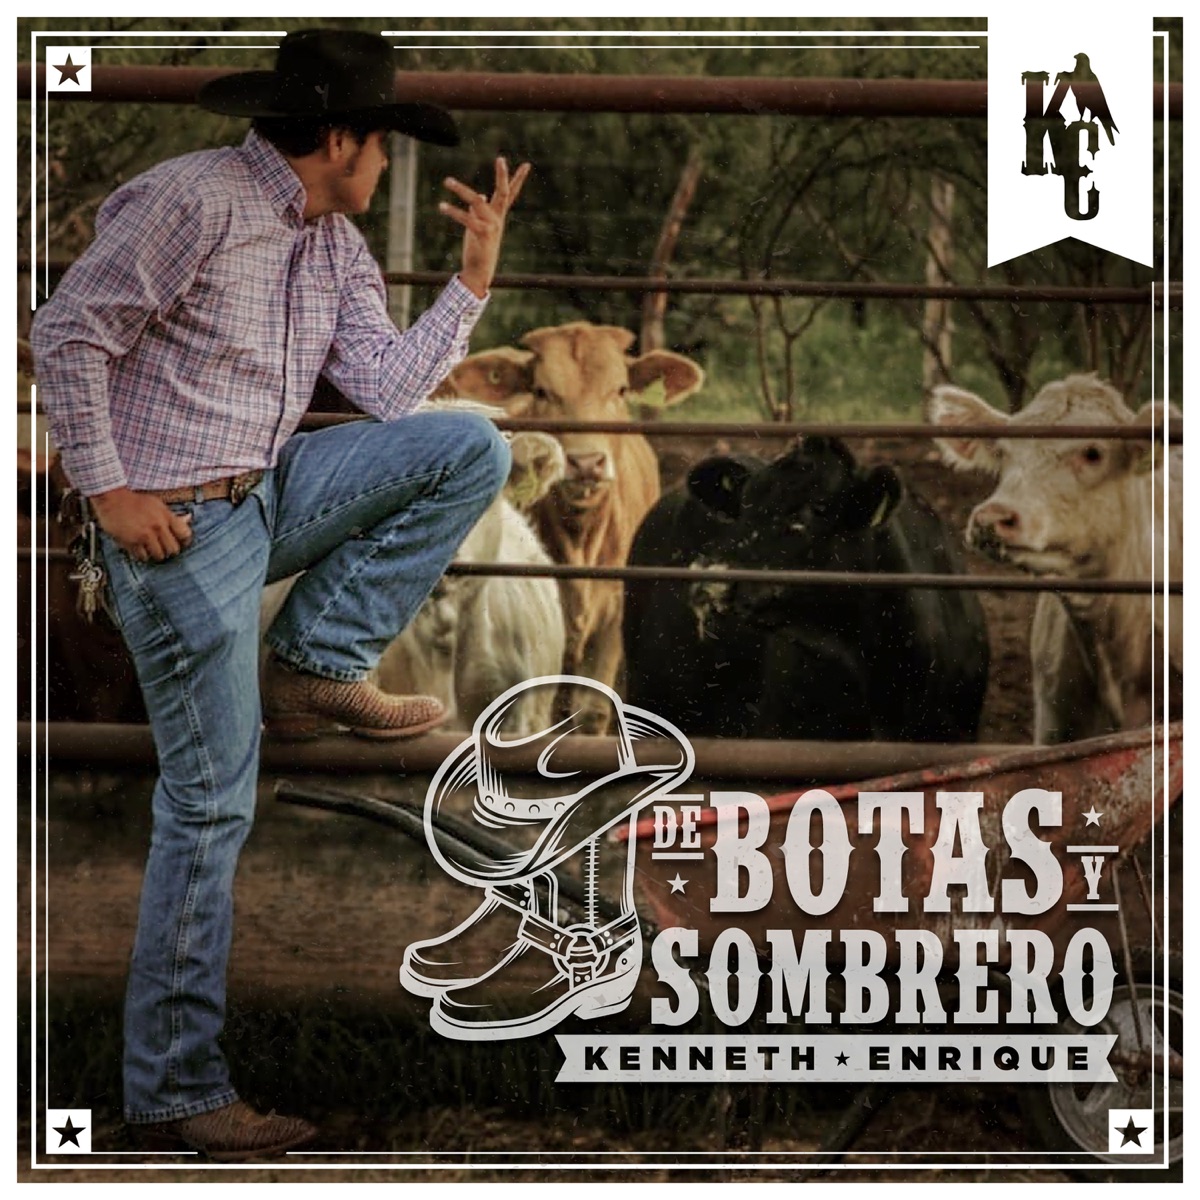 De Botas Y Sombrero - Album by Kenneth Enrique - Apple Music